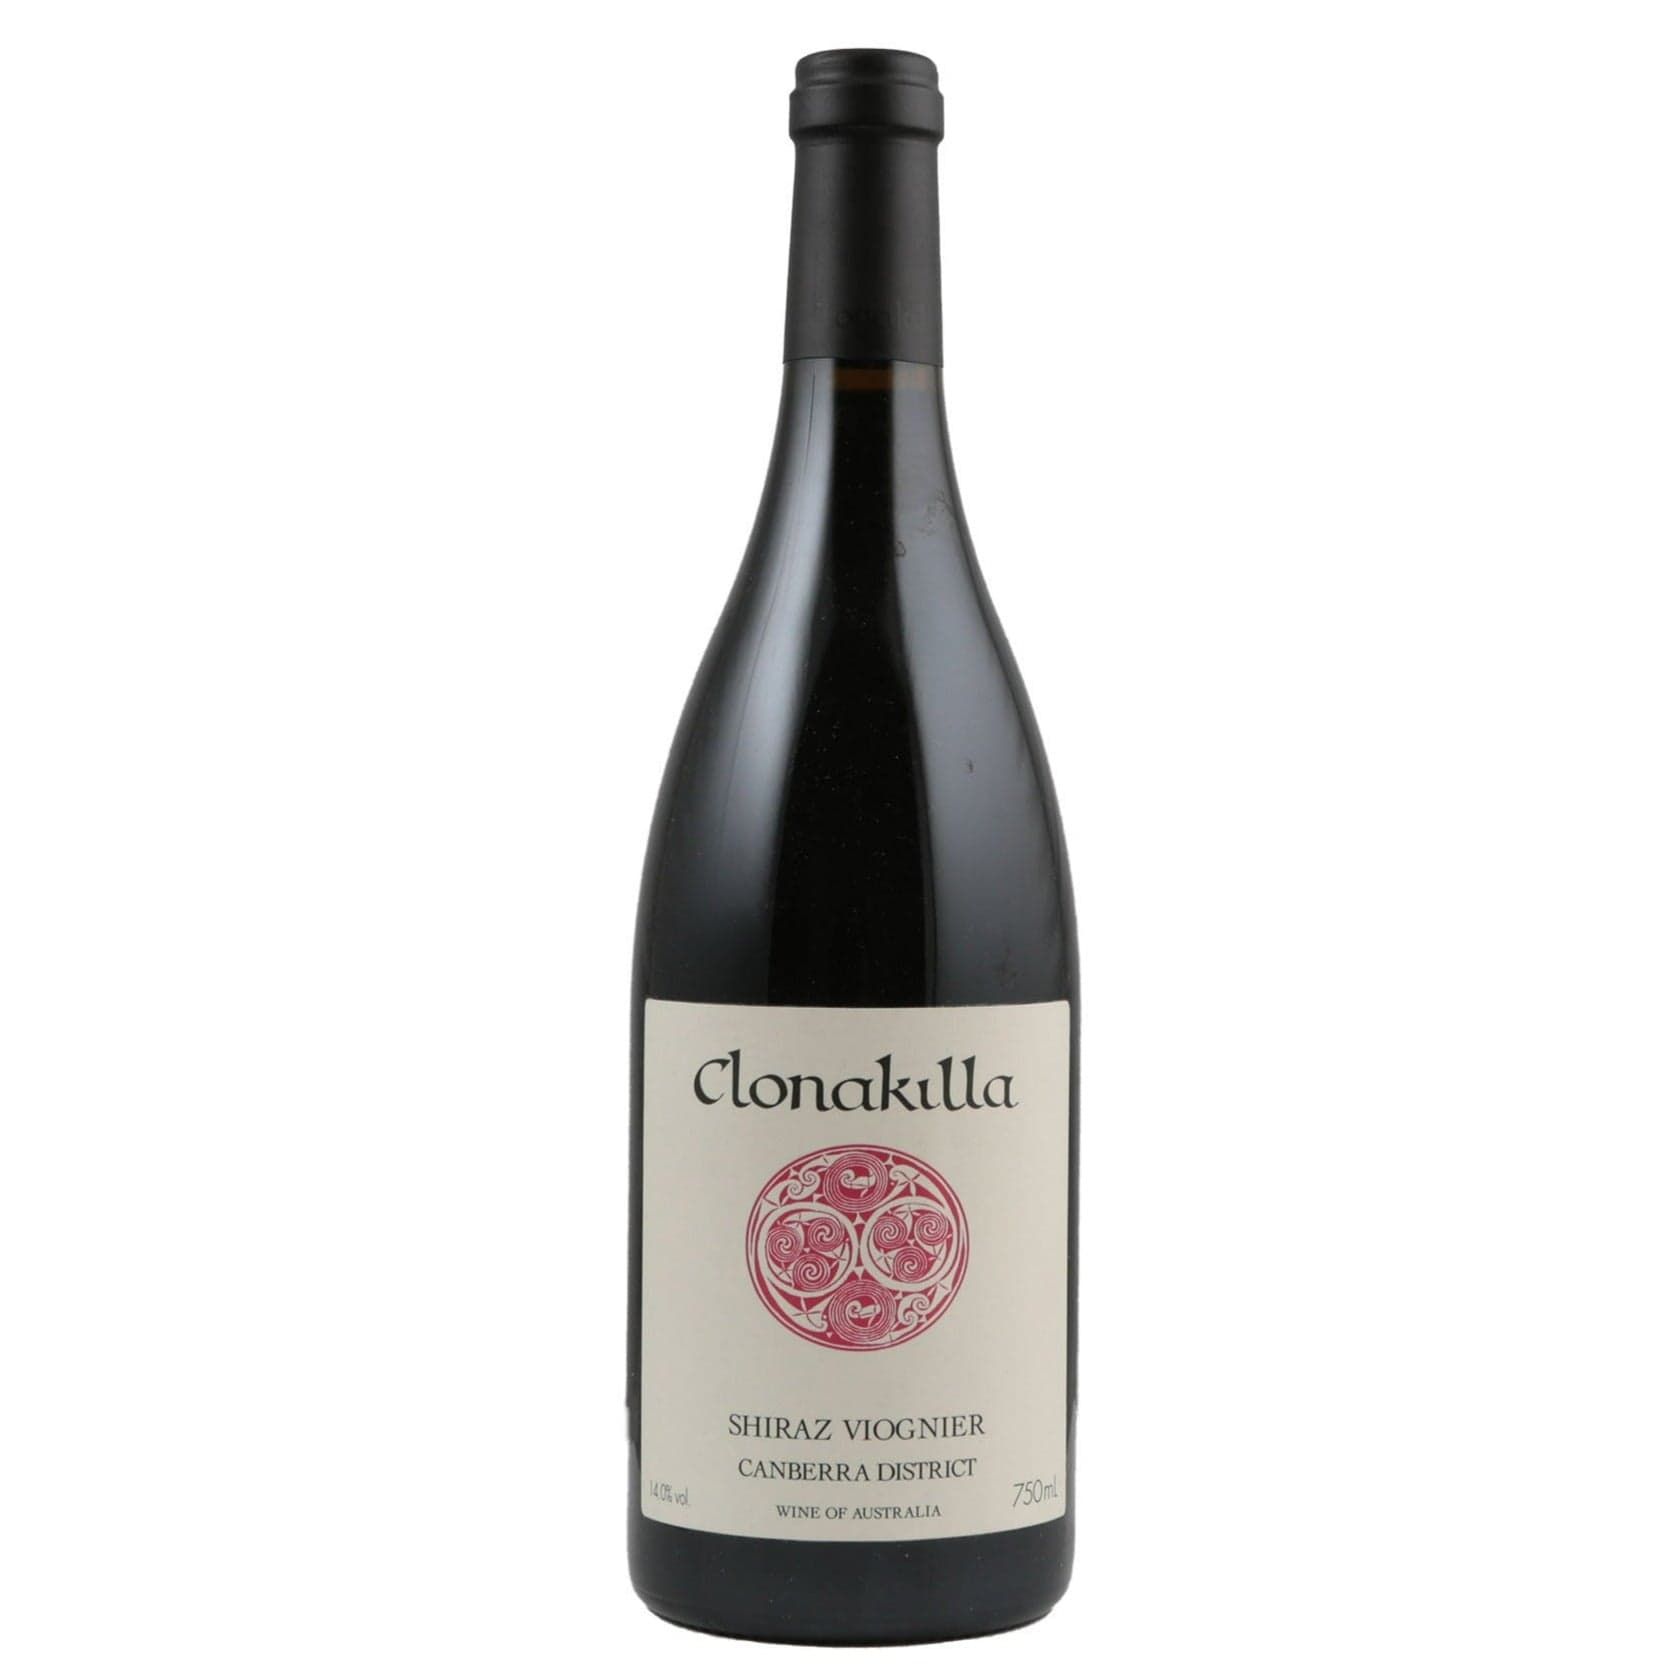 Single bottle of Red wine Clonakilla, Shiraz-Viognier Canberra District, 2017 95% Shiraz, 5% Viognier